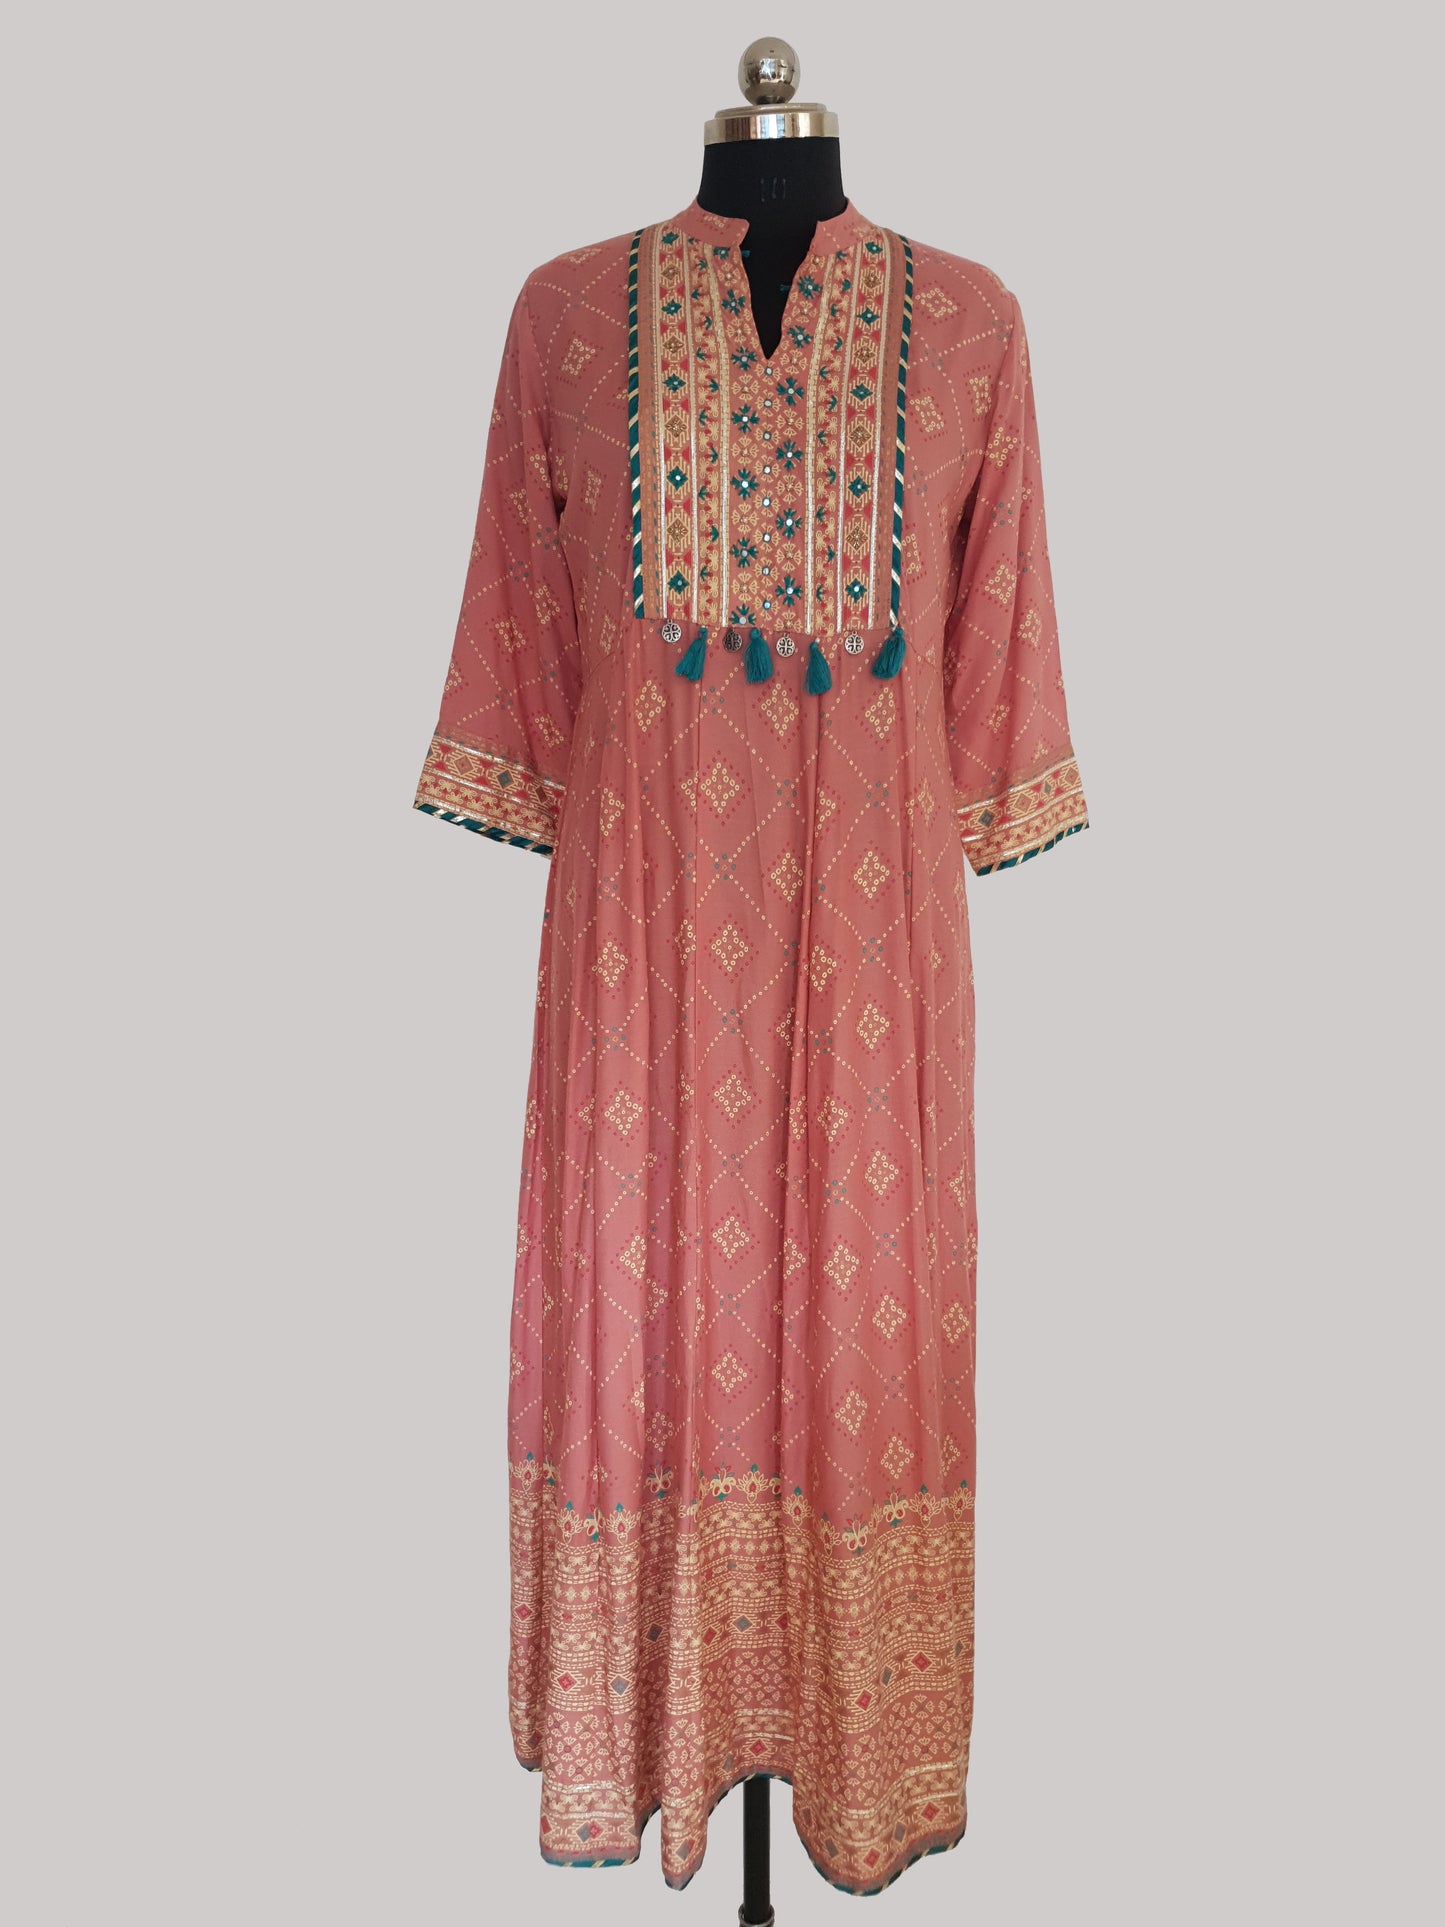 Peach Stylish Cotton Long Anarkali type Dress